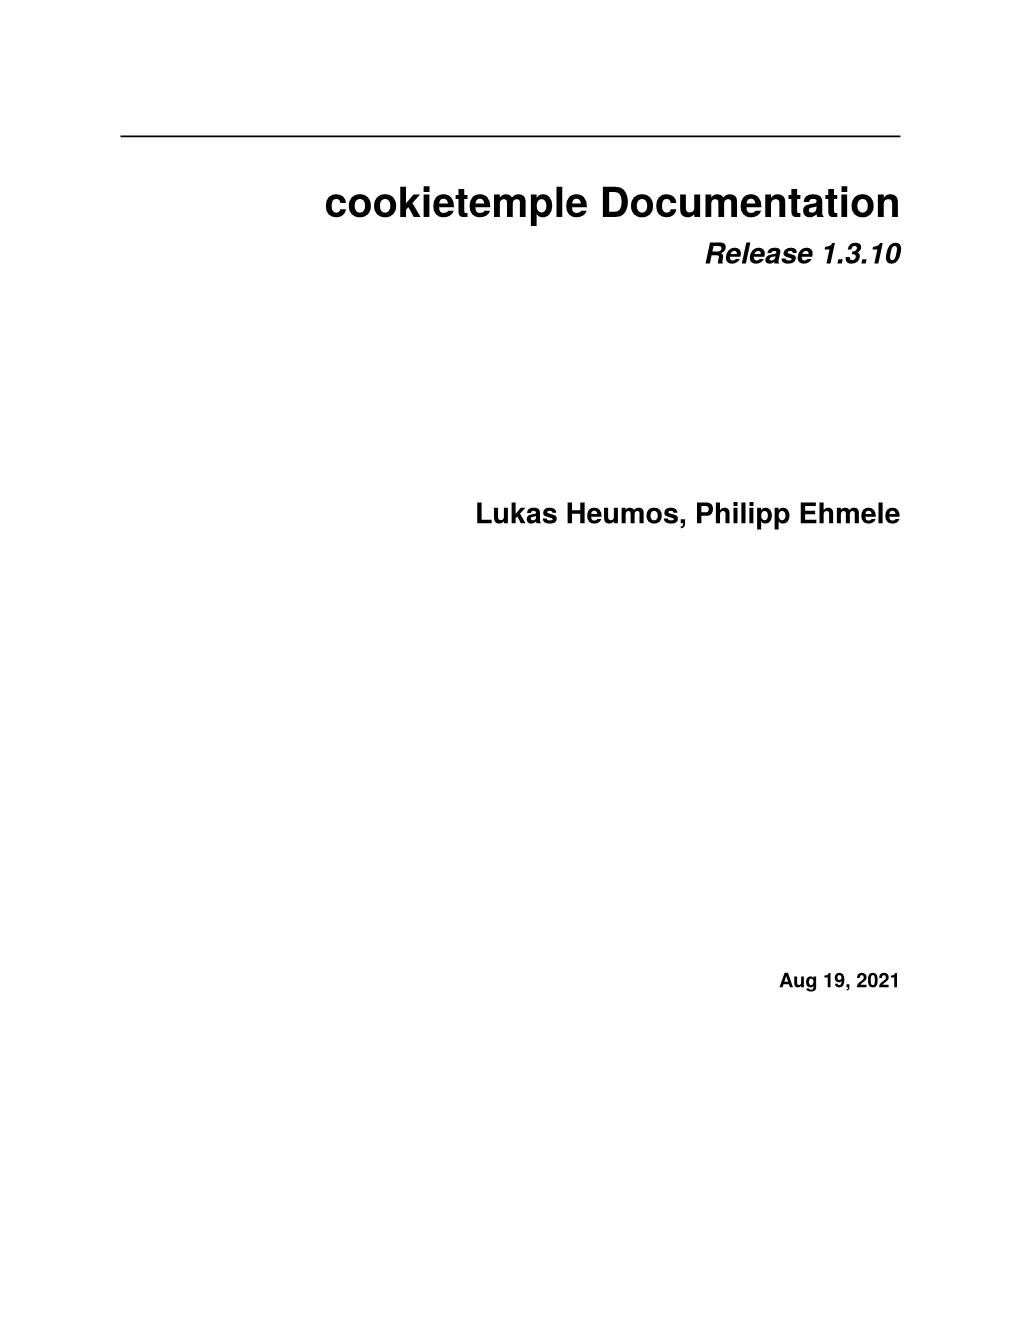 Cookietemple Documentation Release 1.3.10